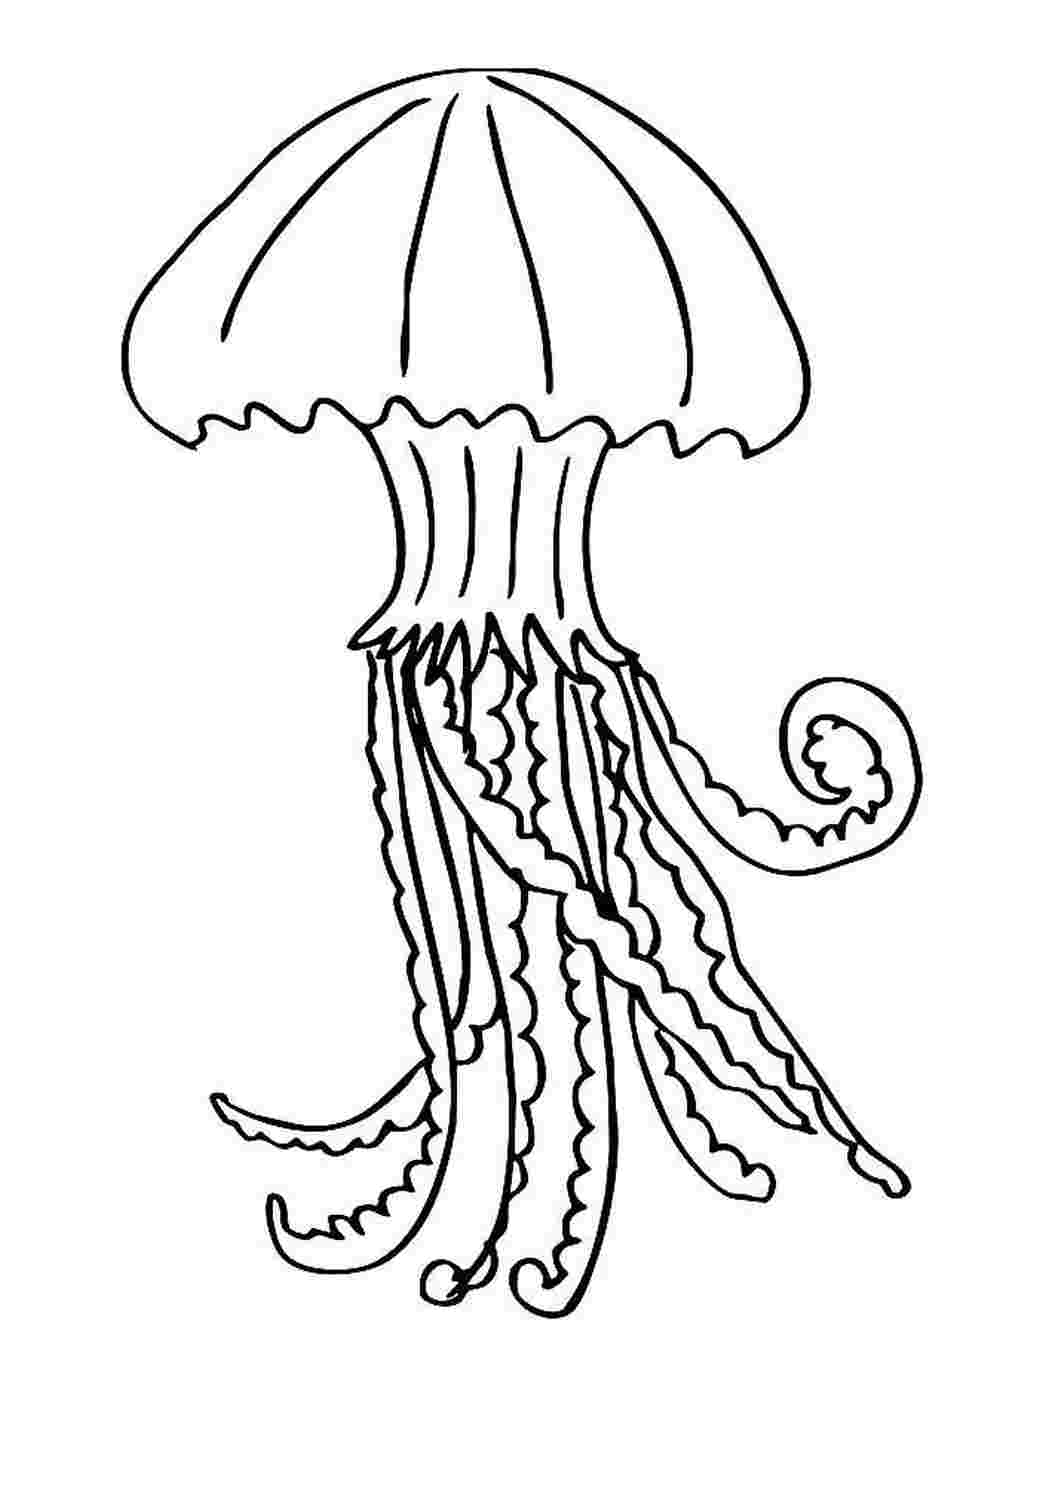 Медуза раскраска для детей